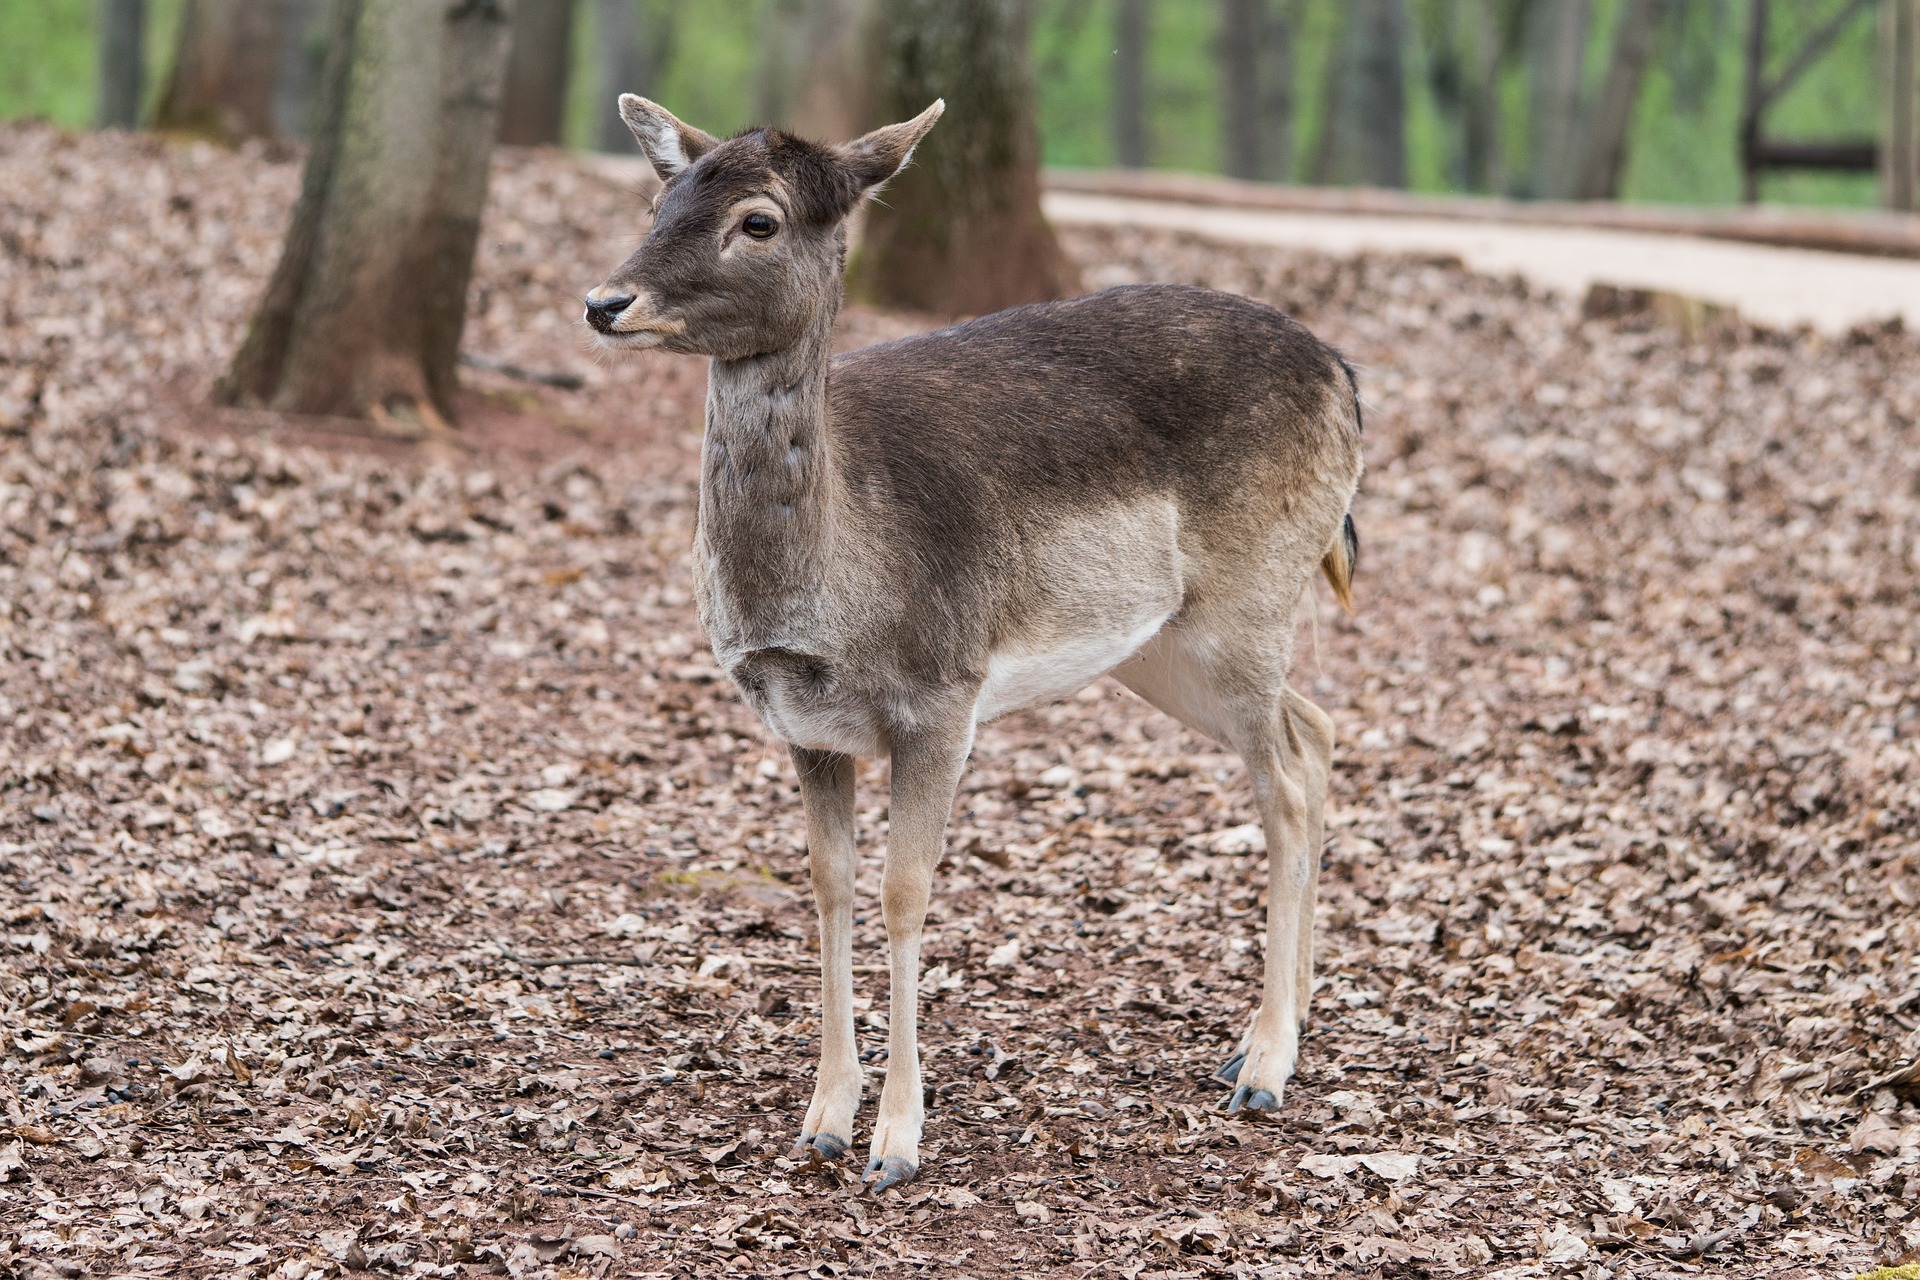 Roe deer photo